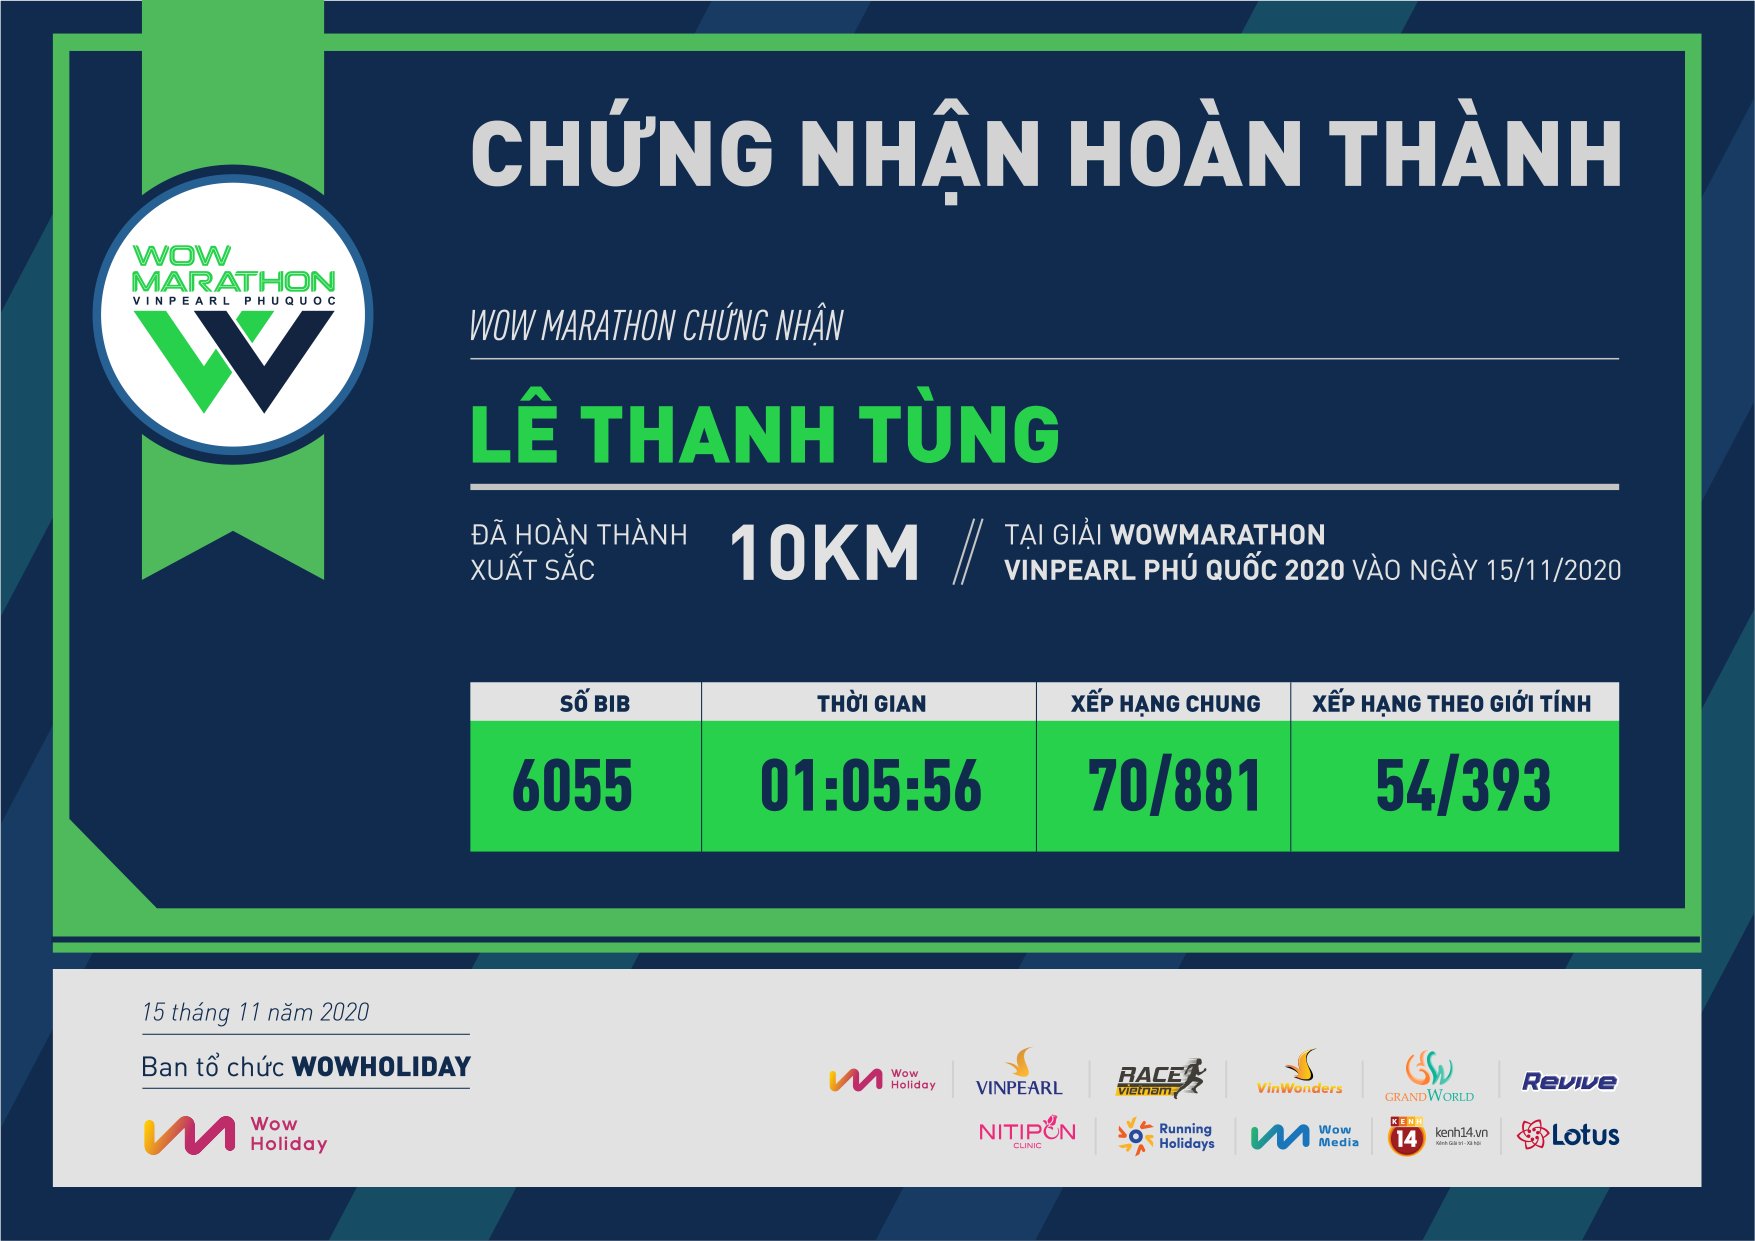 6055 - Lê Thanh Tùng